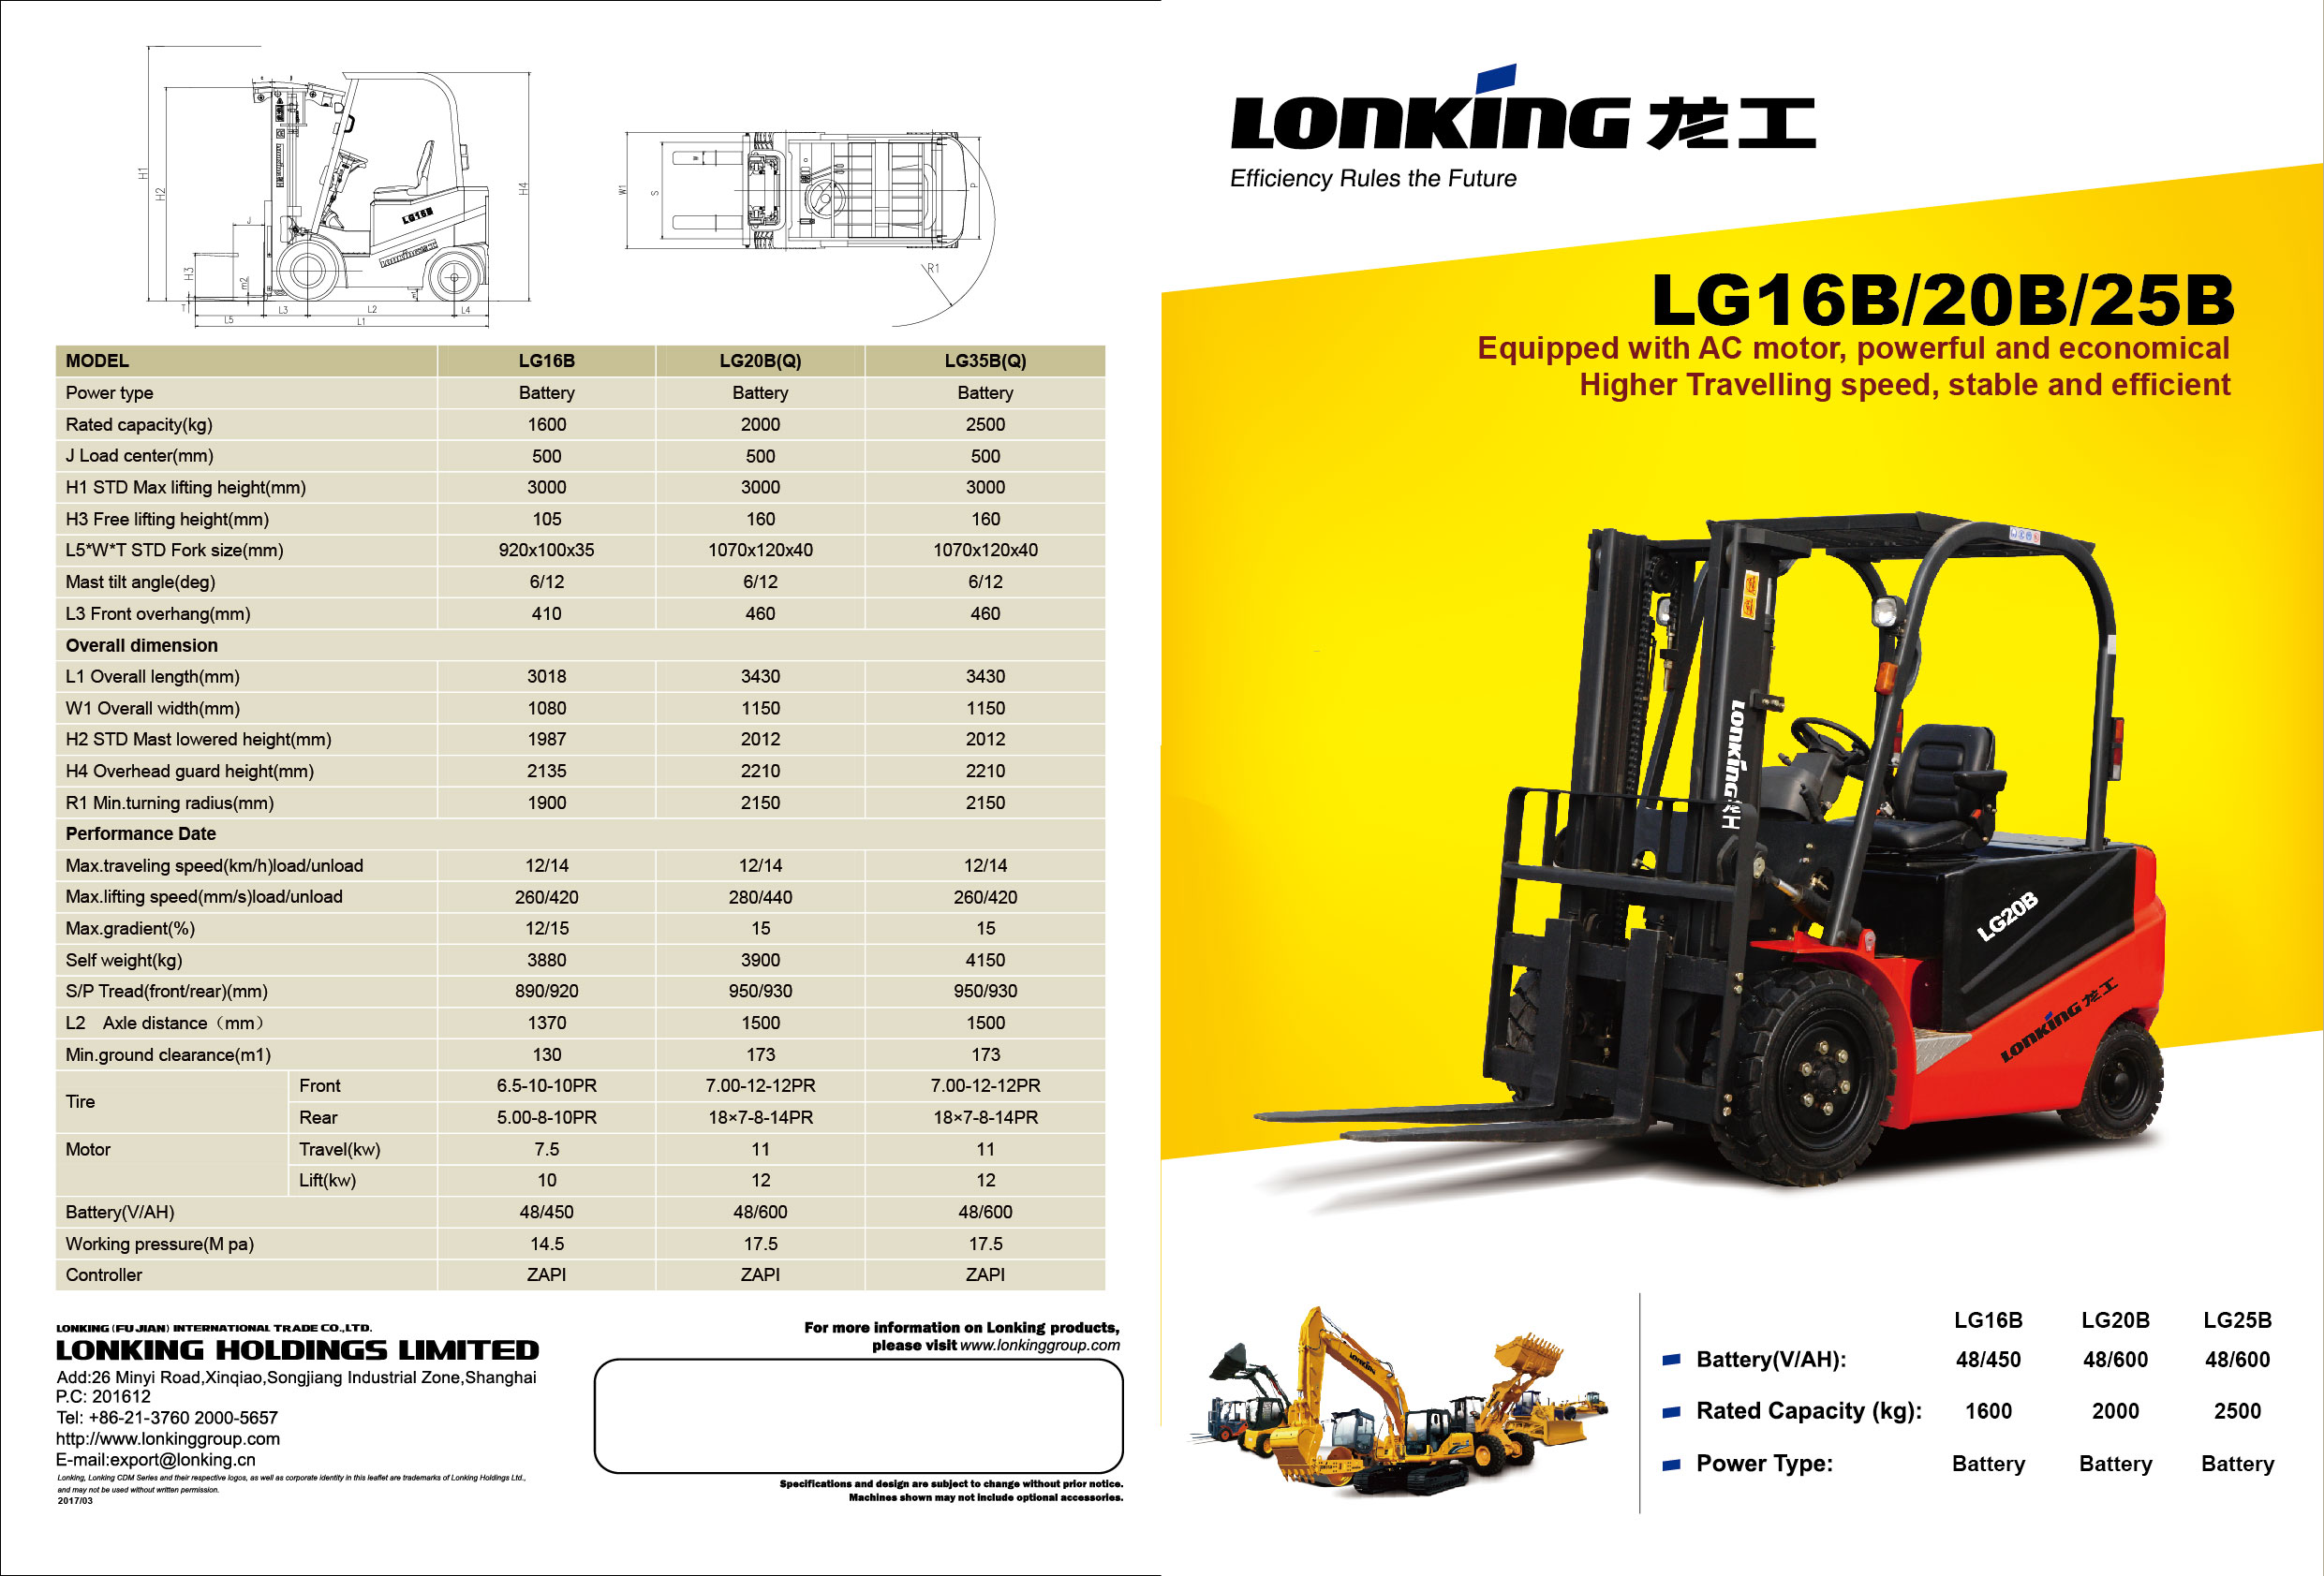 Фронтальные погрузчики lonking lg833n(b). технические характеристики фронтальногокитайского погрузчика лонкинг (lonking)